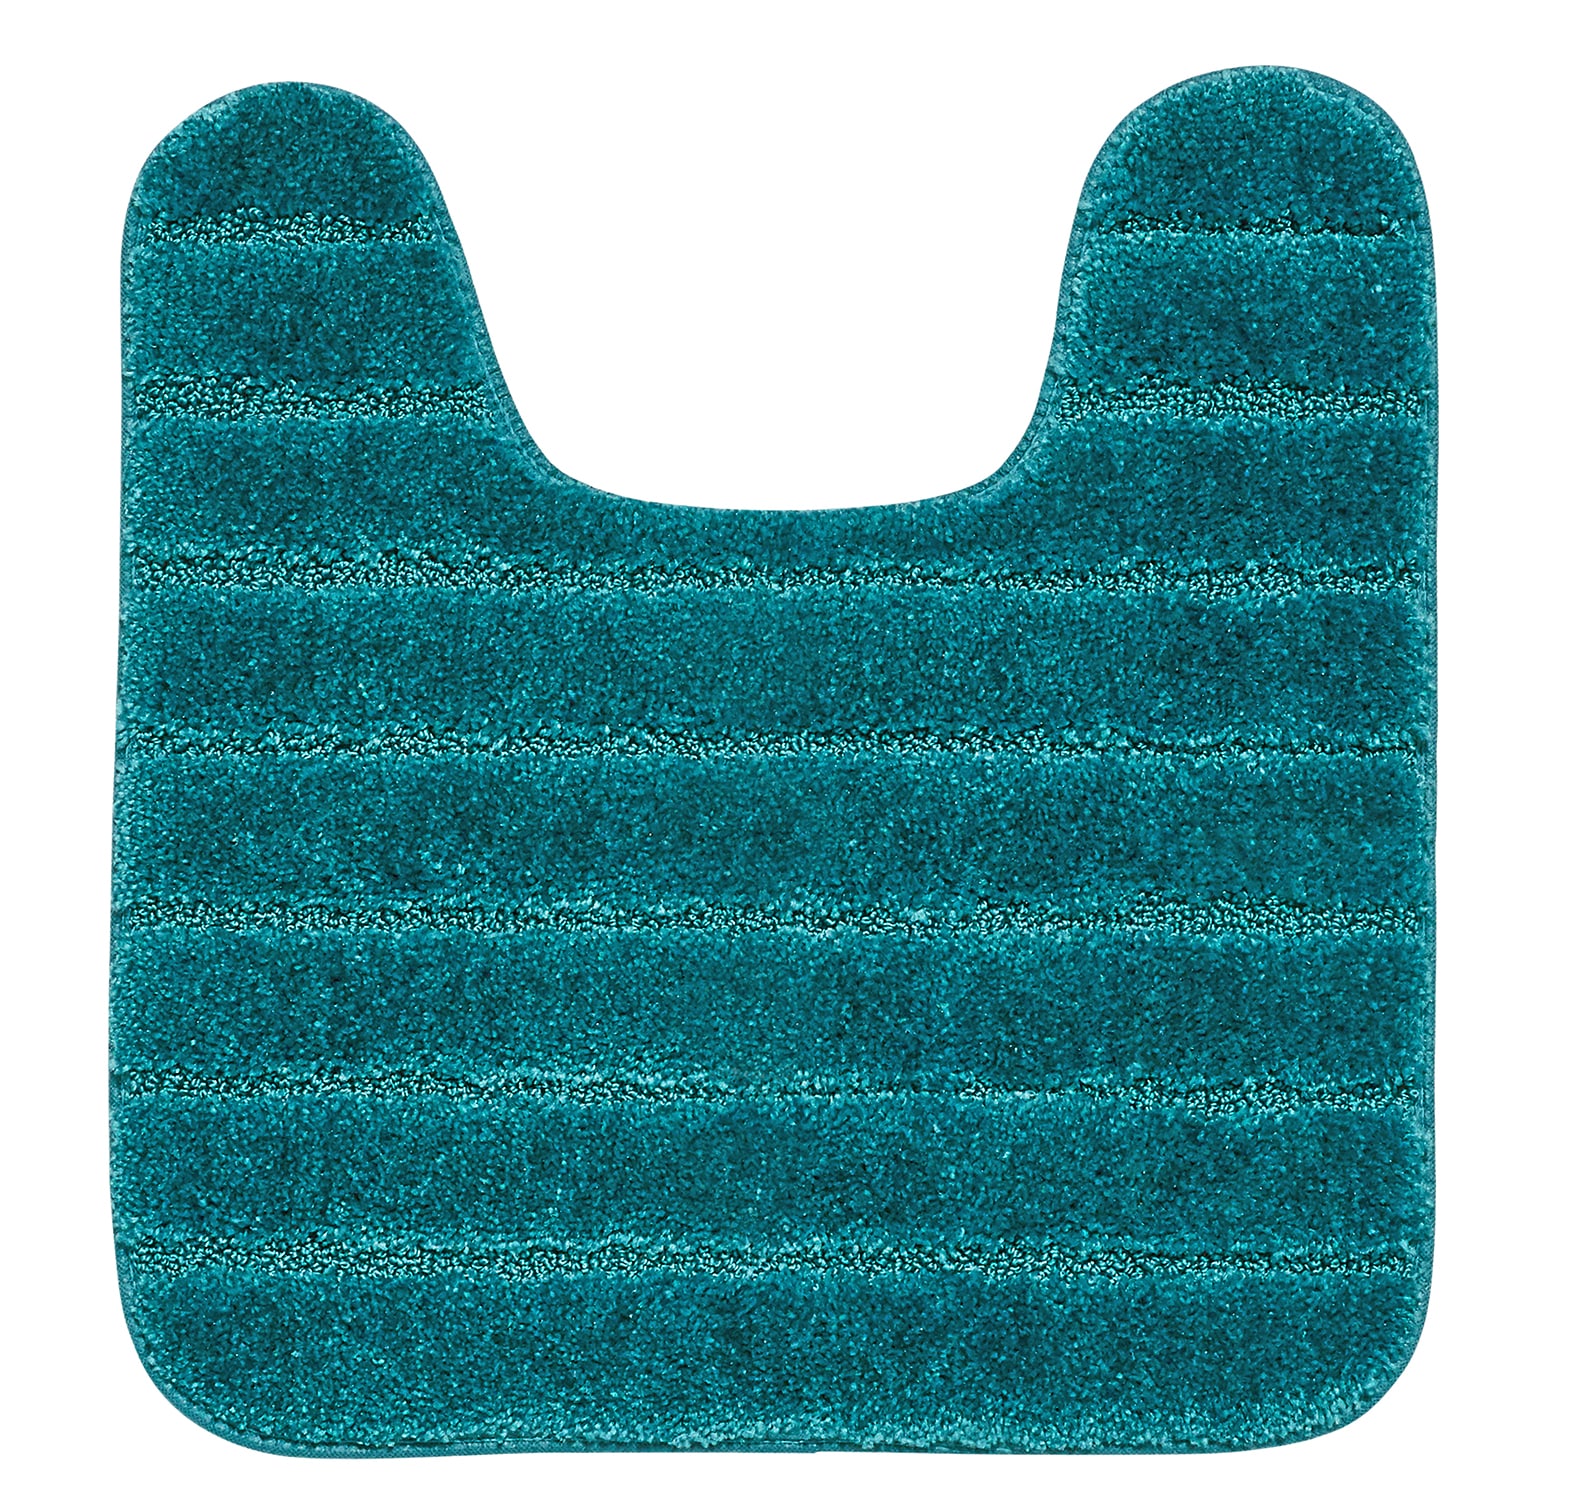 Mainstays Basic Bath Rug, Turquoise, 23 x 38 